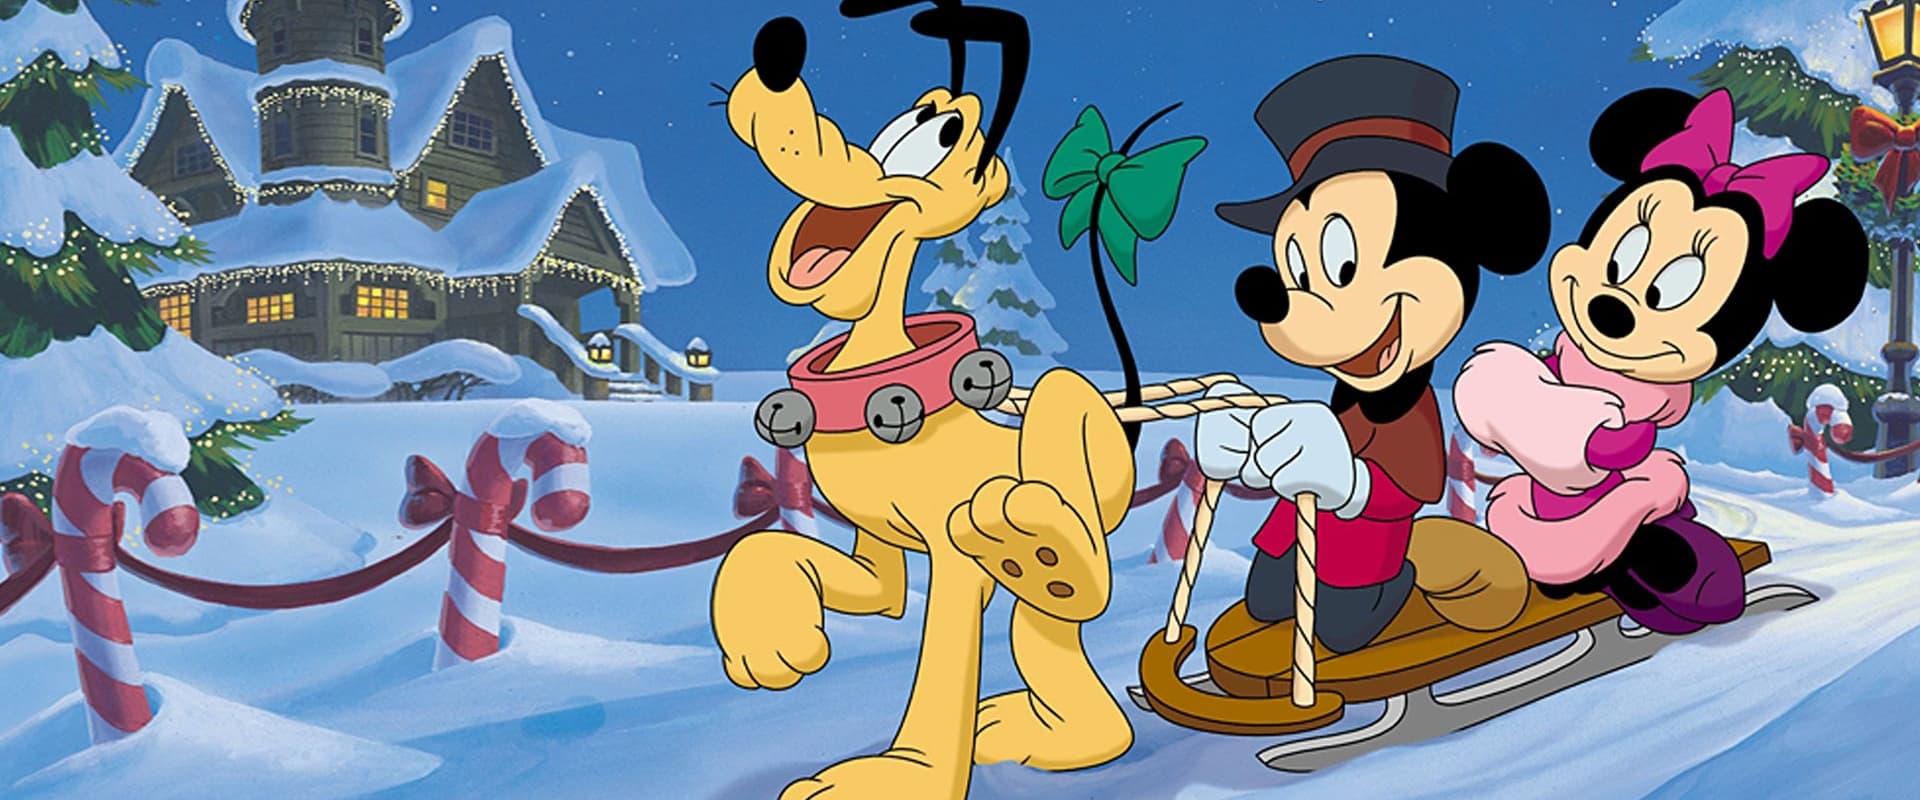 Mickey's Once Upon a Christmas